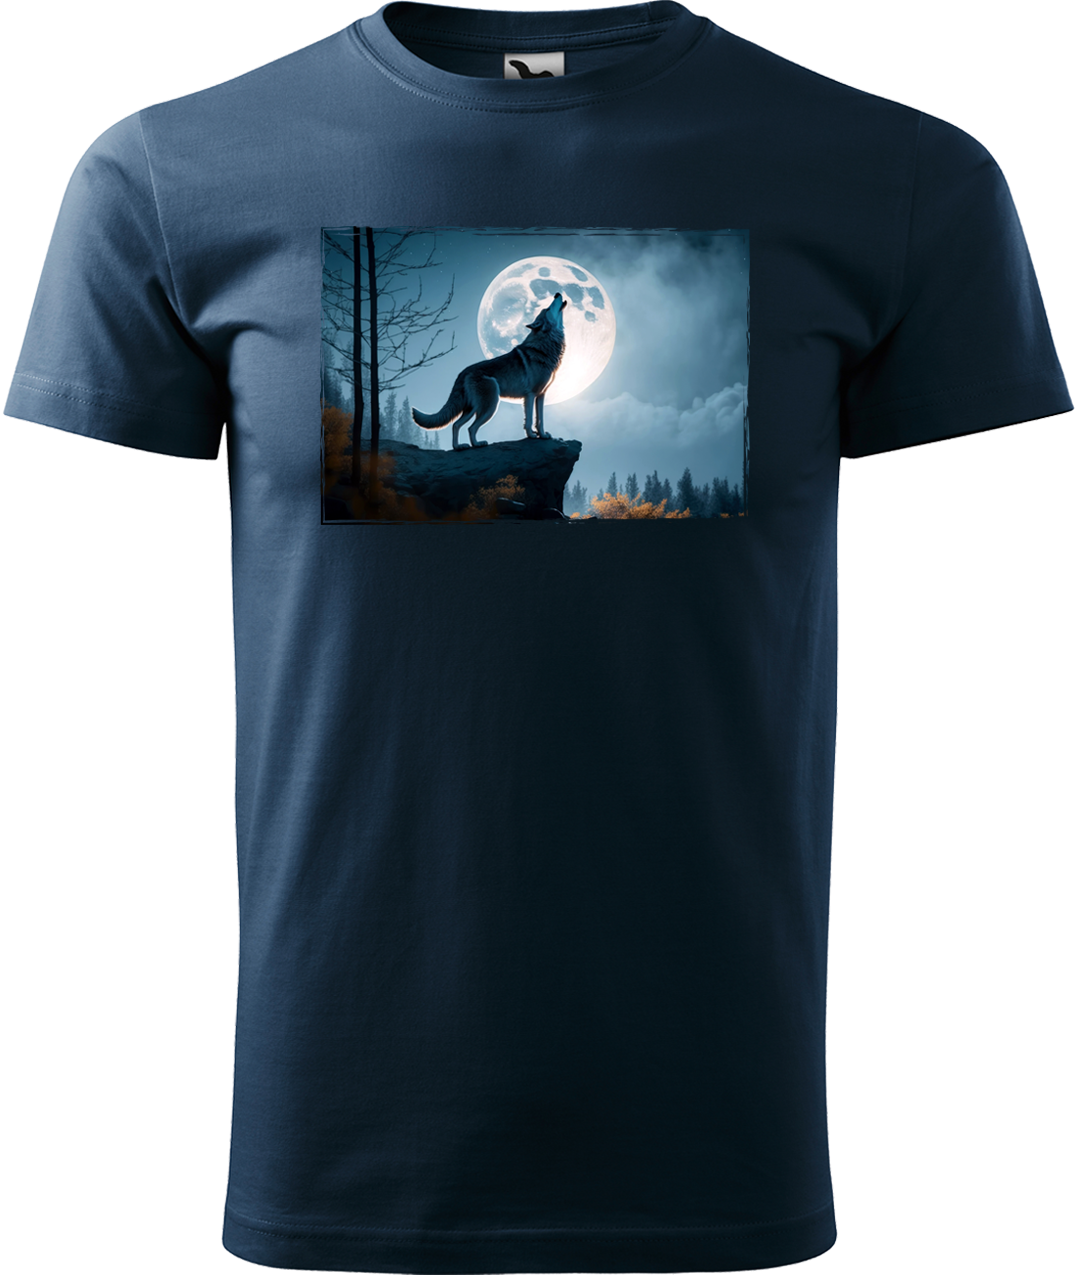 Pánské tričko s vlkem - Vyjící vlk Velikost: L, Barva: Námořní modrá (02)